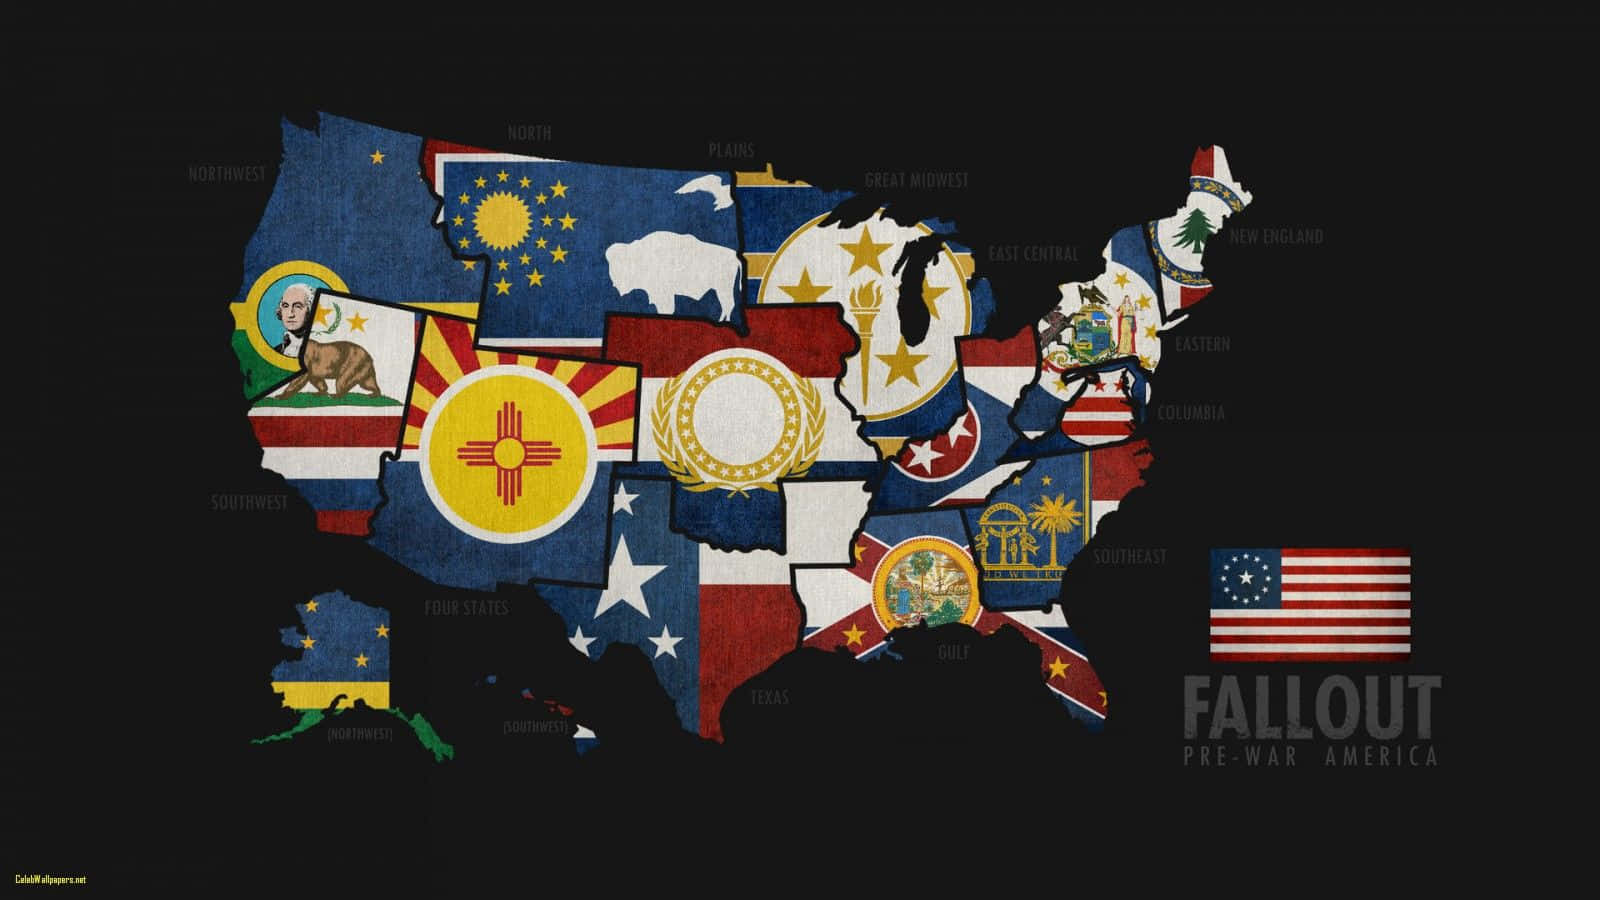 Kort over Fallout 4 med USA's flag Wallpaper